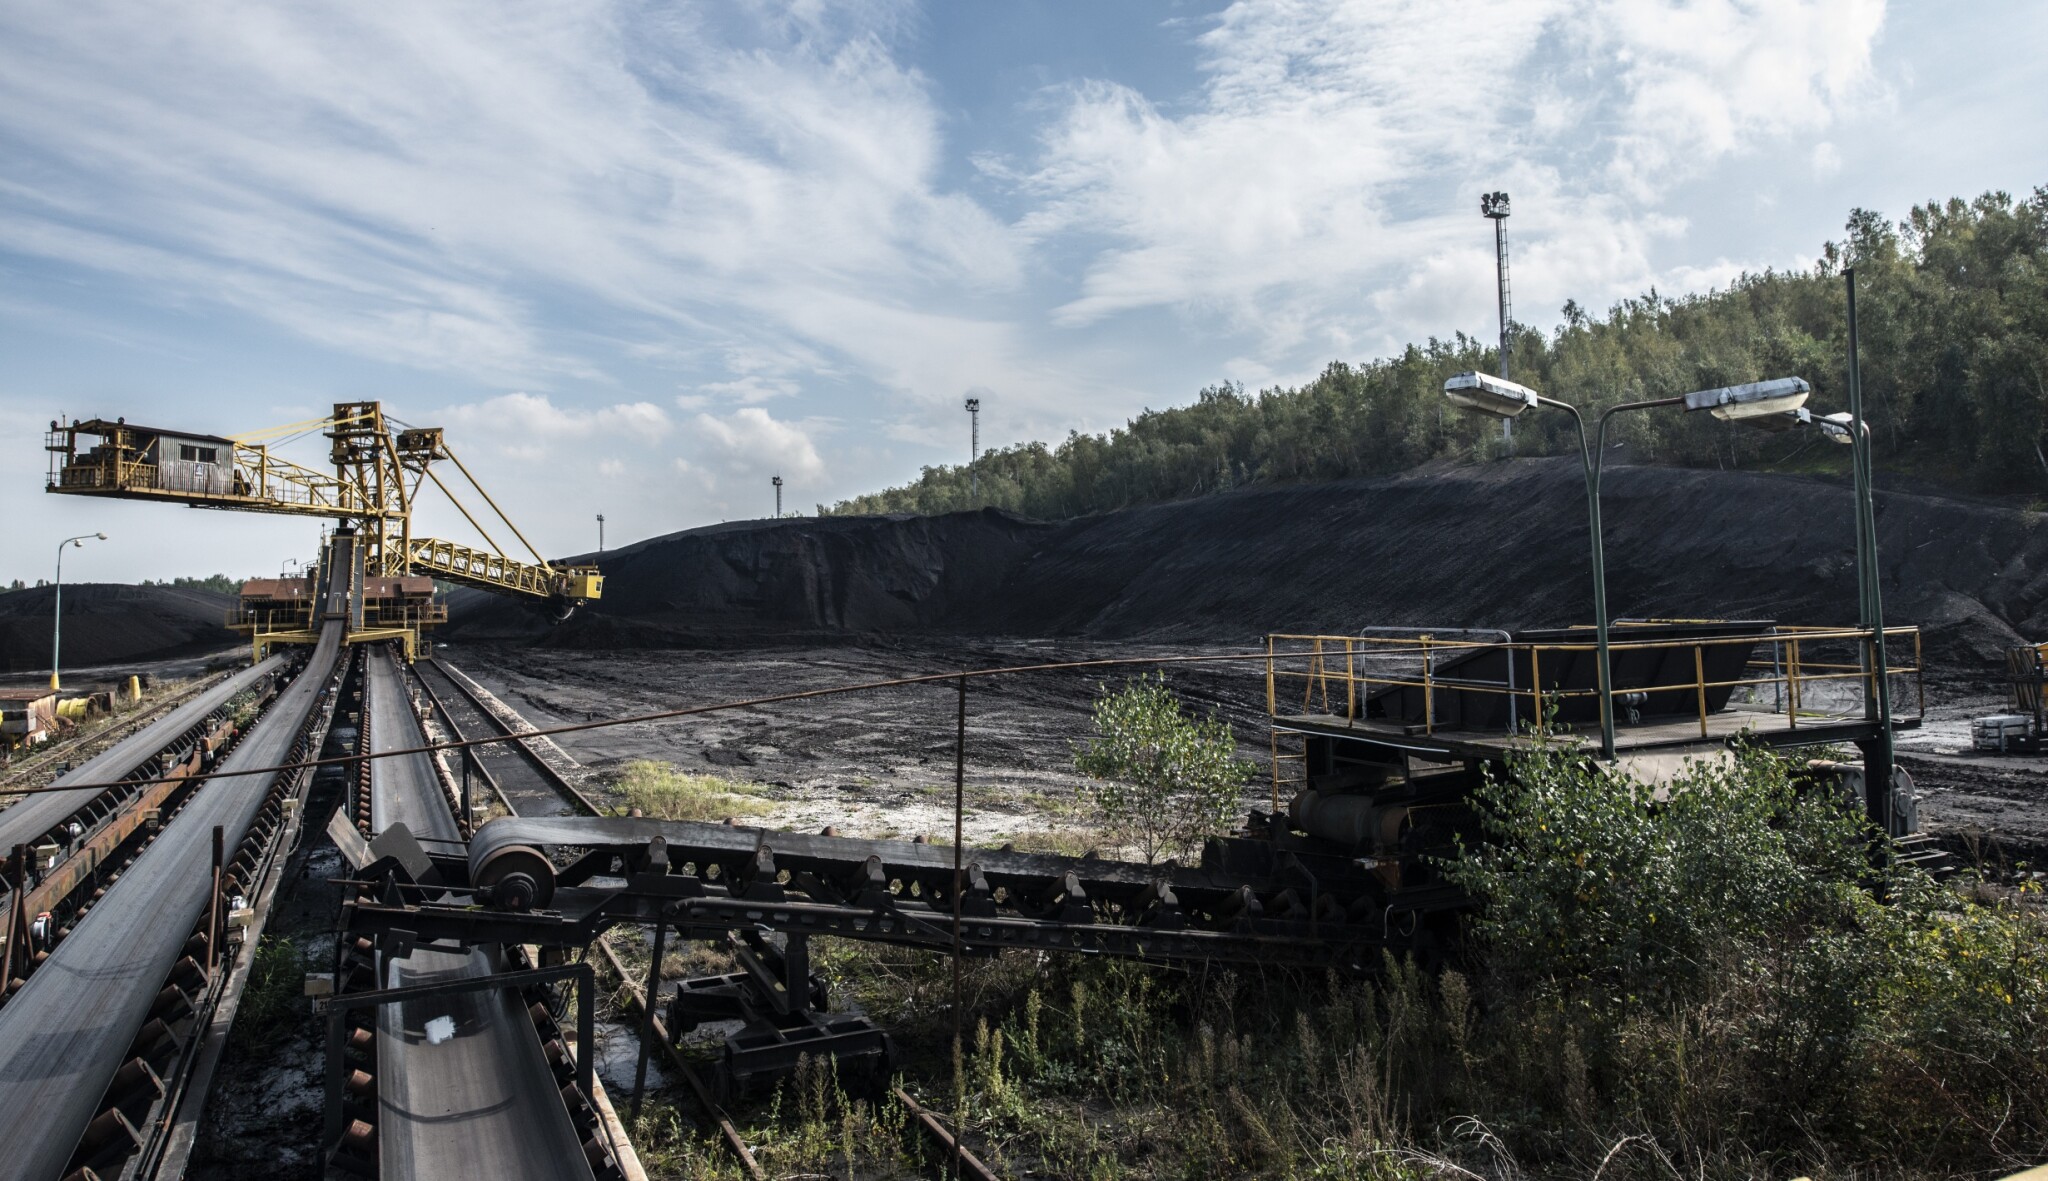 Poptávka po uhlí, ropě a plynu dosáhne vrcholu do roku 2030, tvrdí IEA